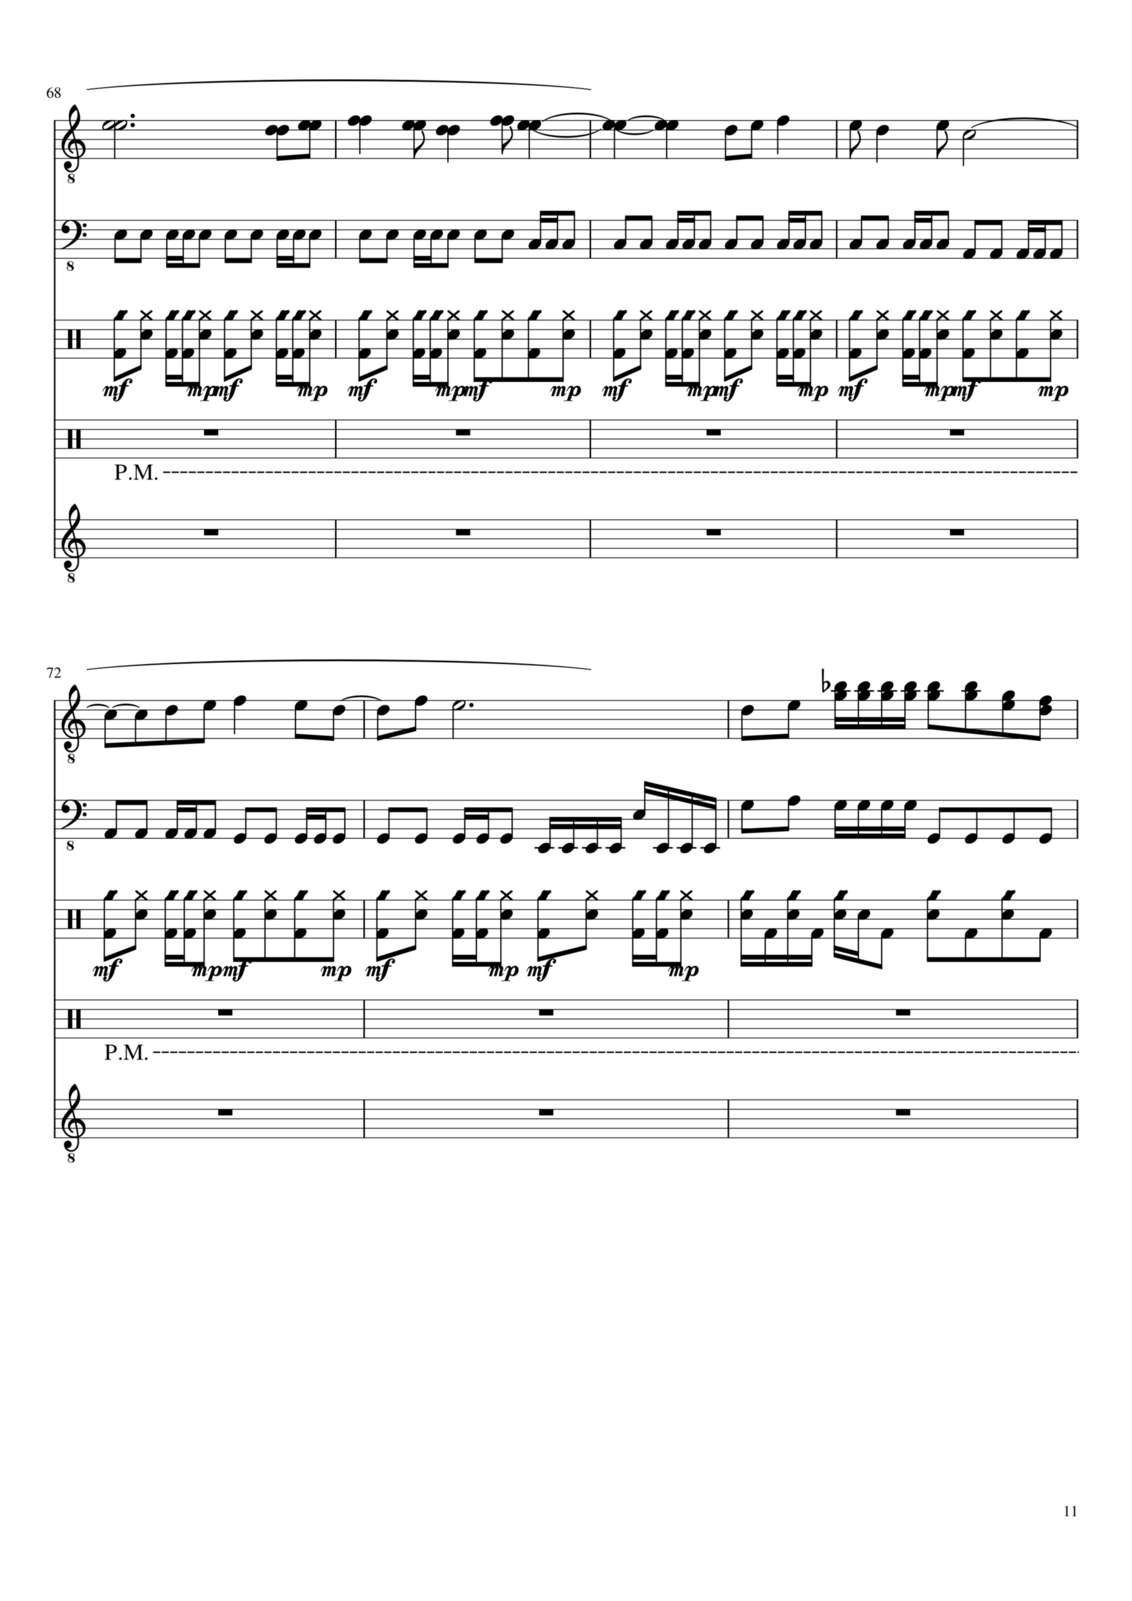 Zvezdnyiy vodoem slide, Image 11